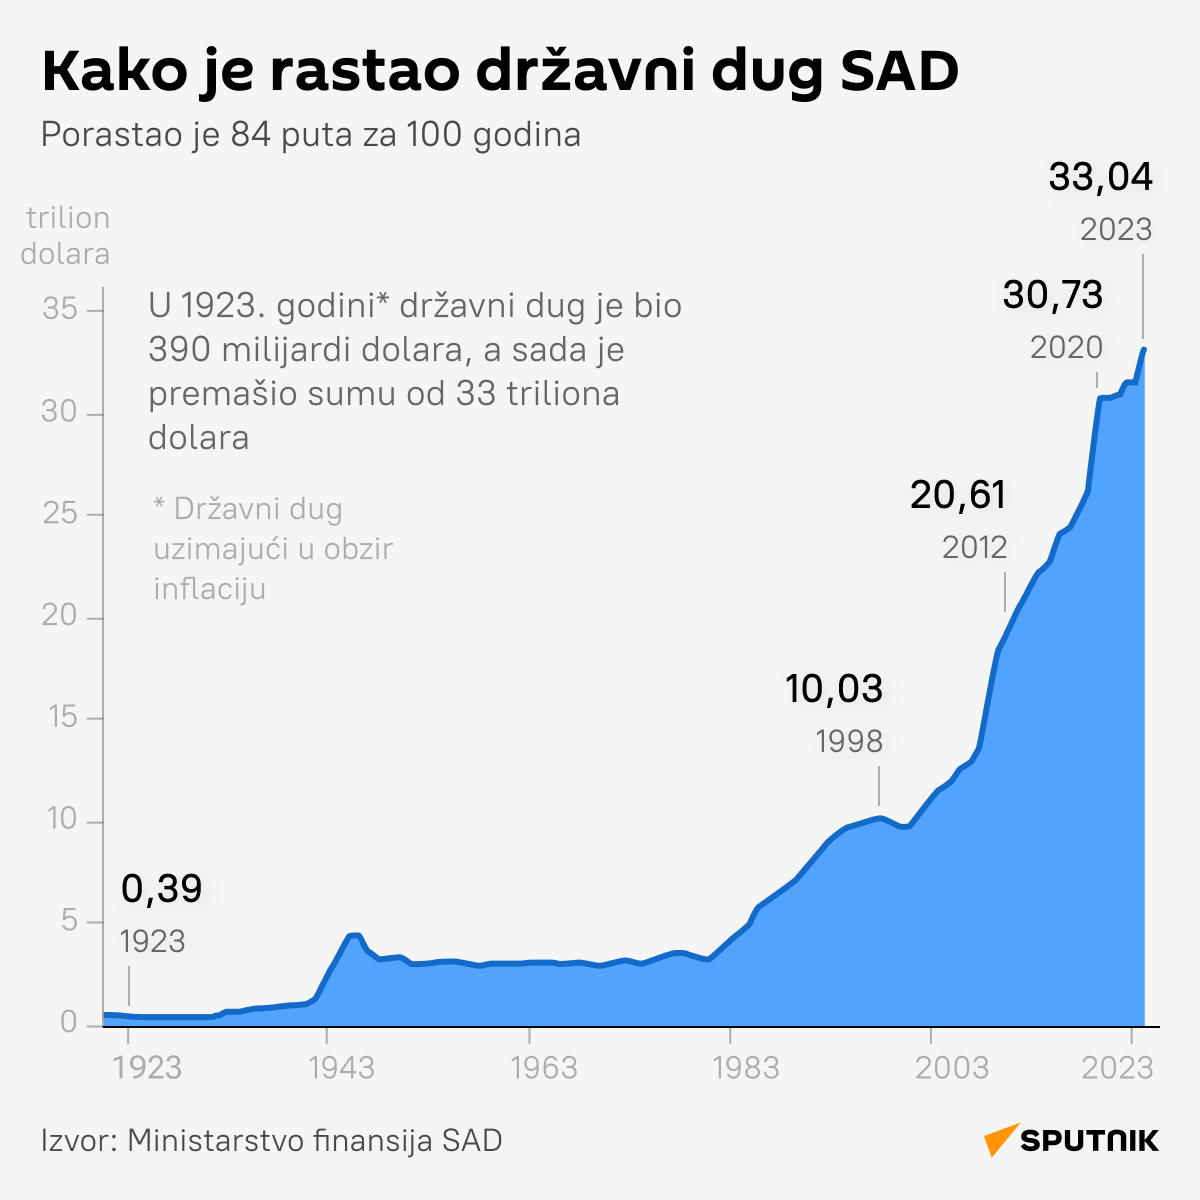 INFOGRAFIKA Kako je rastao državni dug SAD    LATINICA desk - Sputnik Srbija